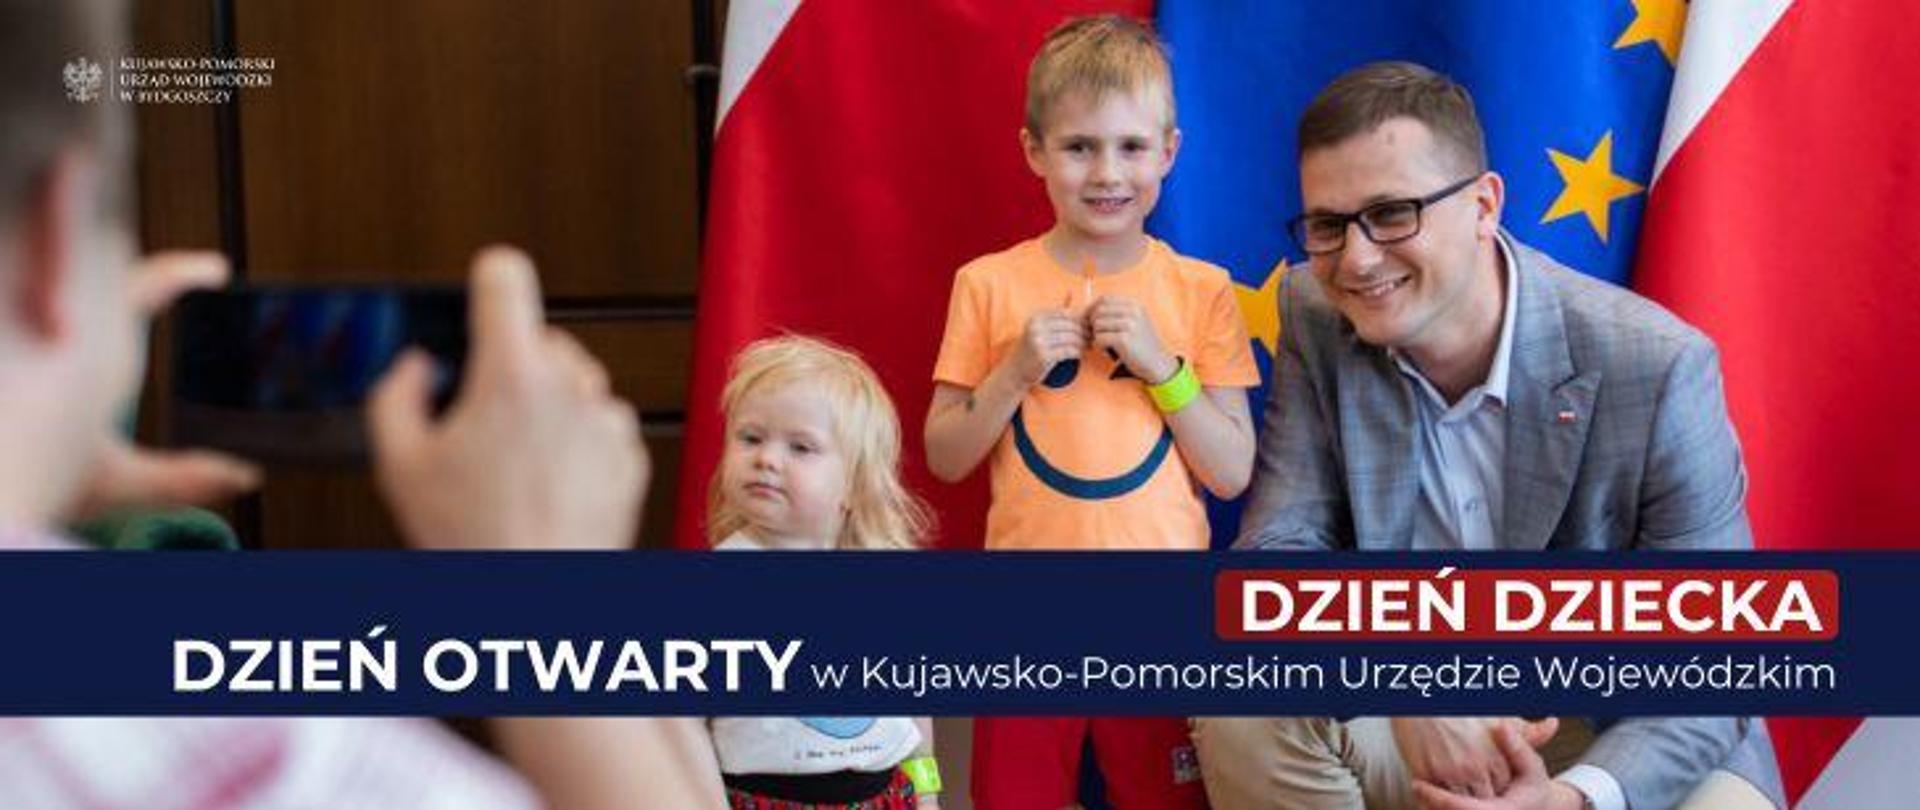 Dzień Dziecka w Kujawsko-Pomorskim Urzędzie Wojewódzkim 